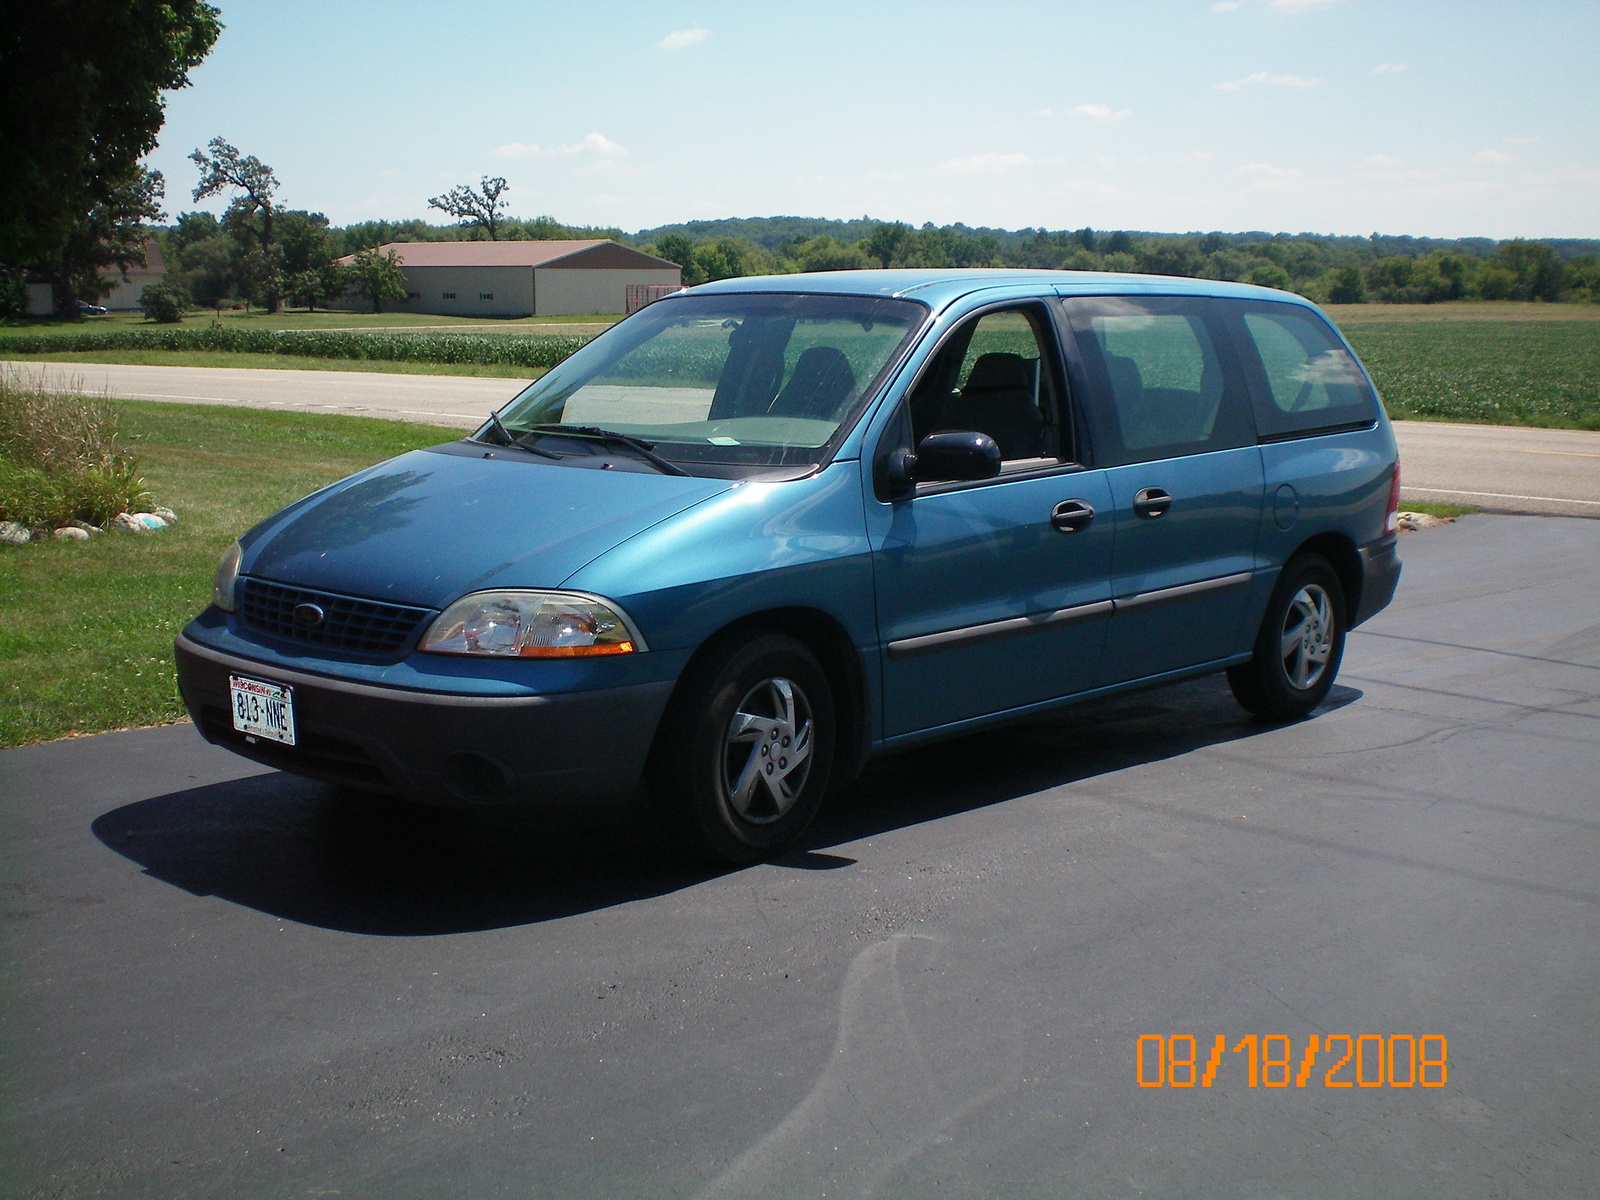 2002 Ford windstar lx minivan reviews #6